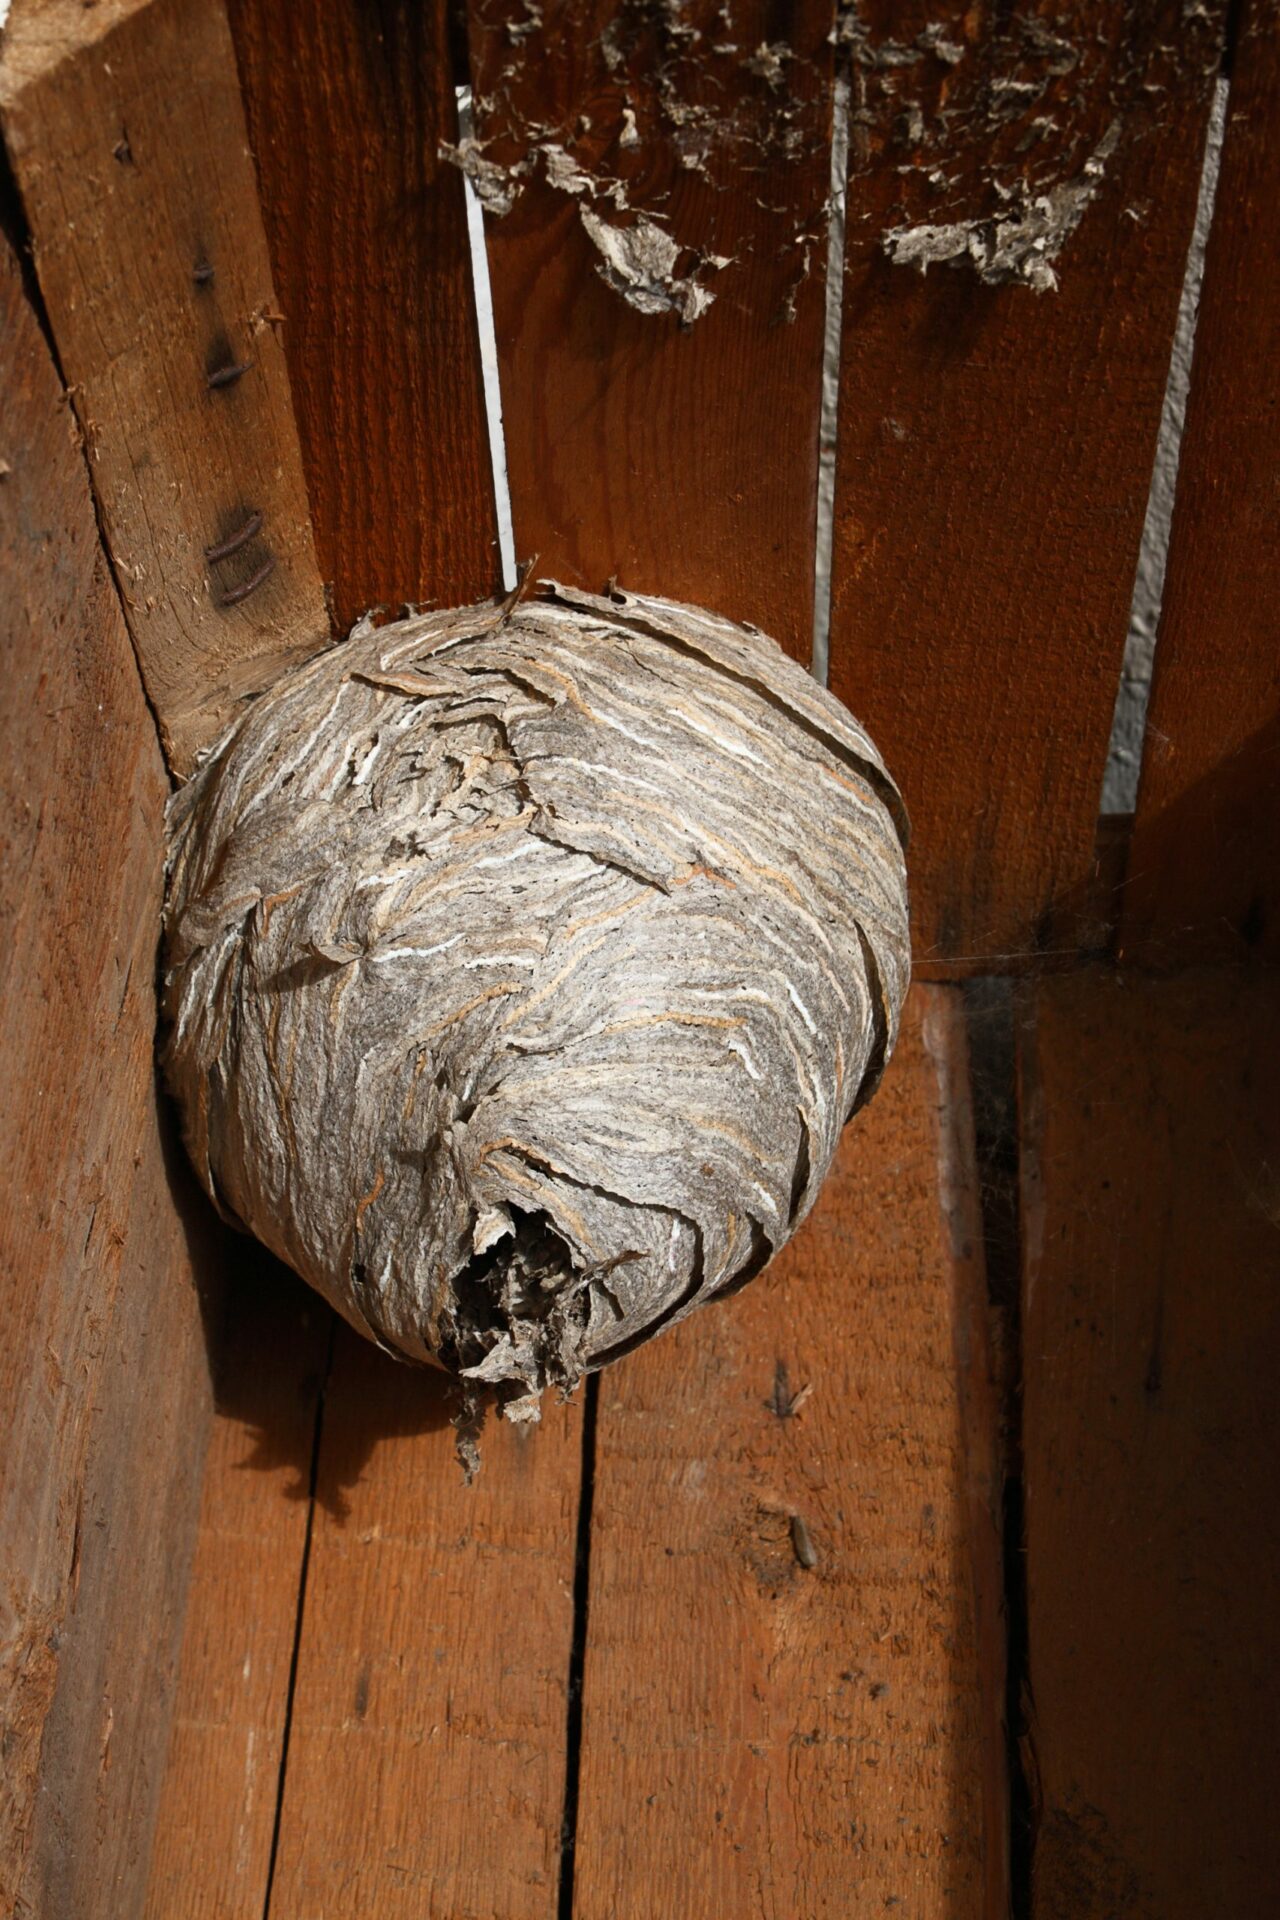 Hornet’s nest